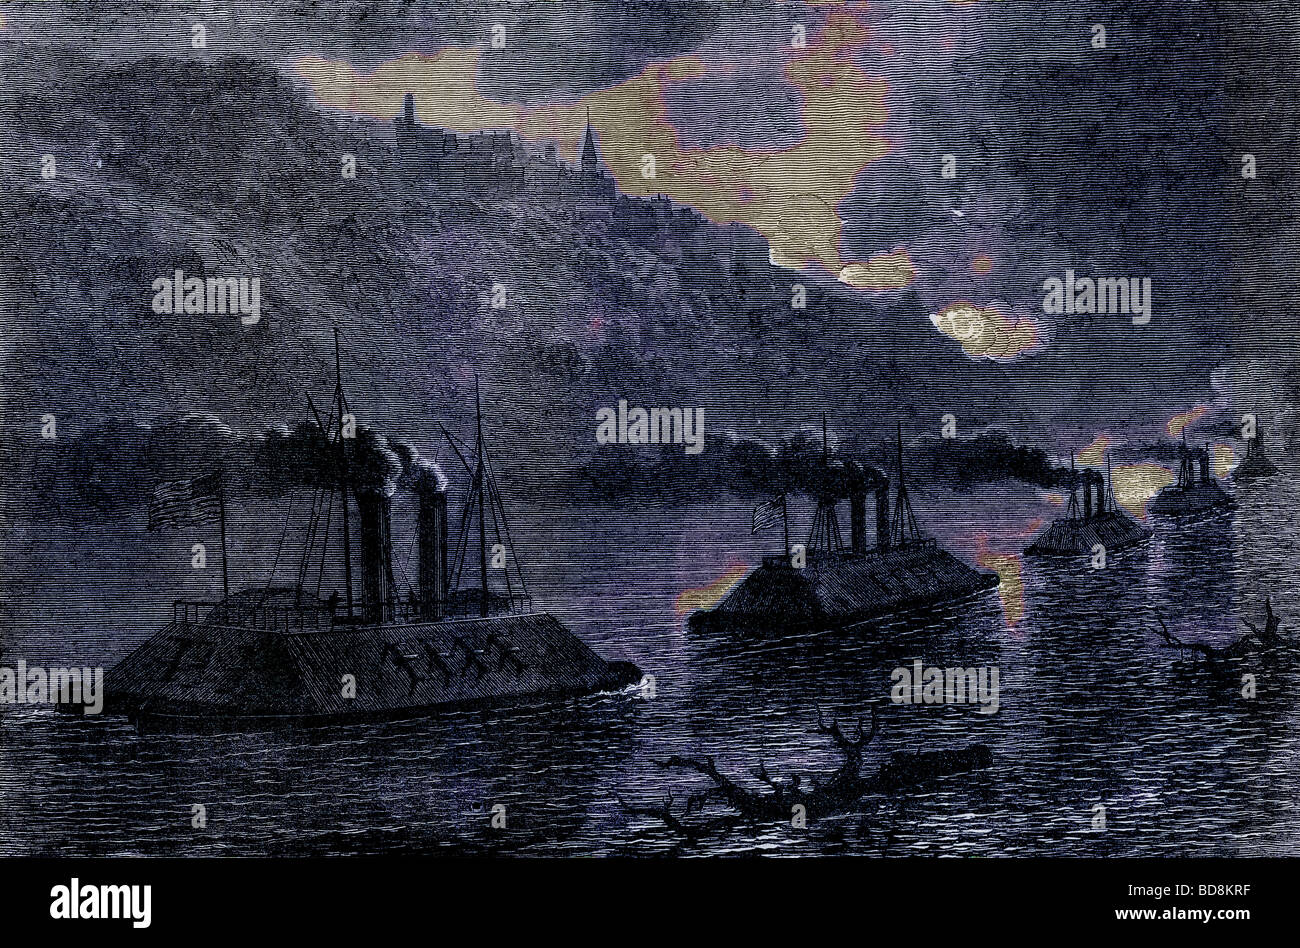 Kanonenboote vor Vicksburg Illustration von Cassell s Geschichte der Vereinigten Staaten vorbei Edward Ollier c 1900 Stockfoto